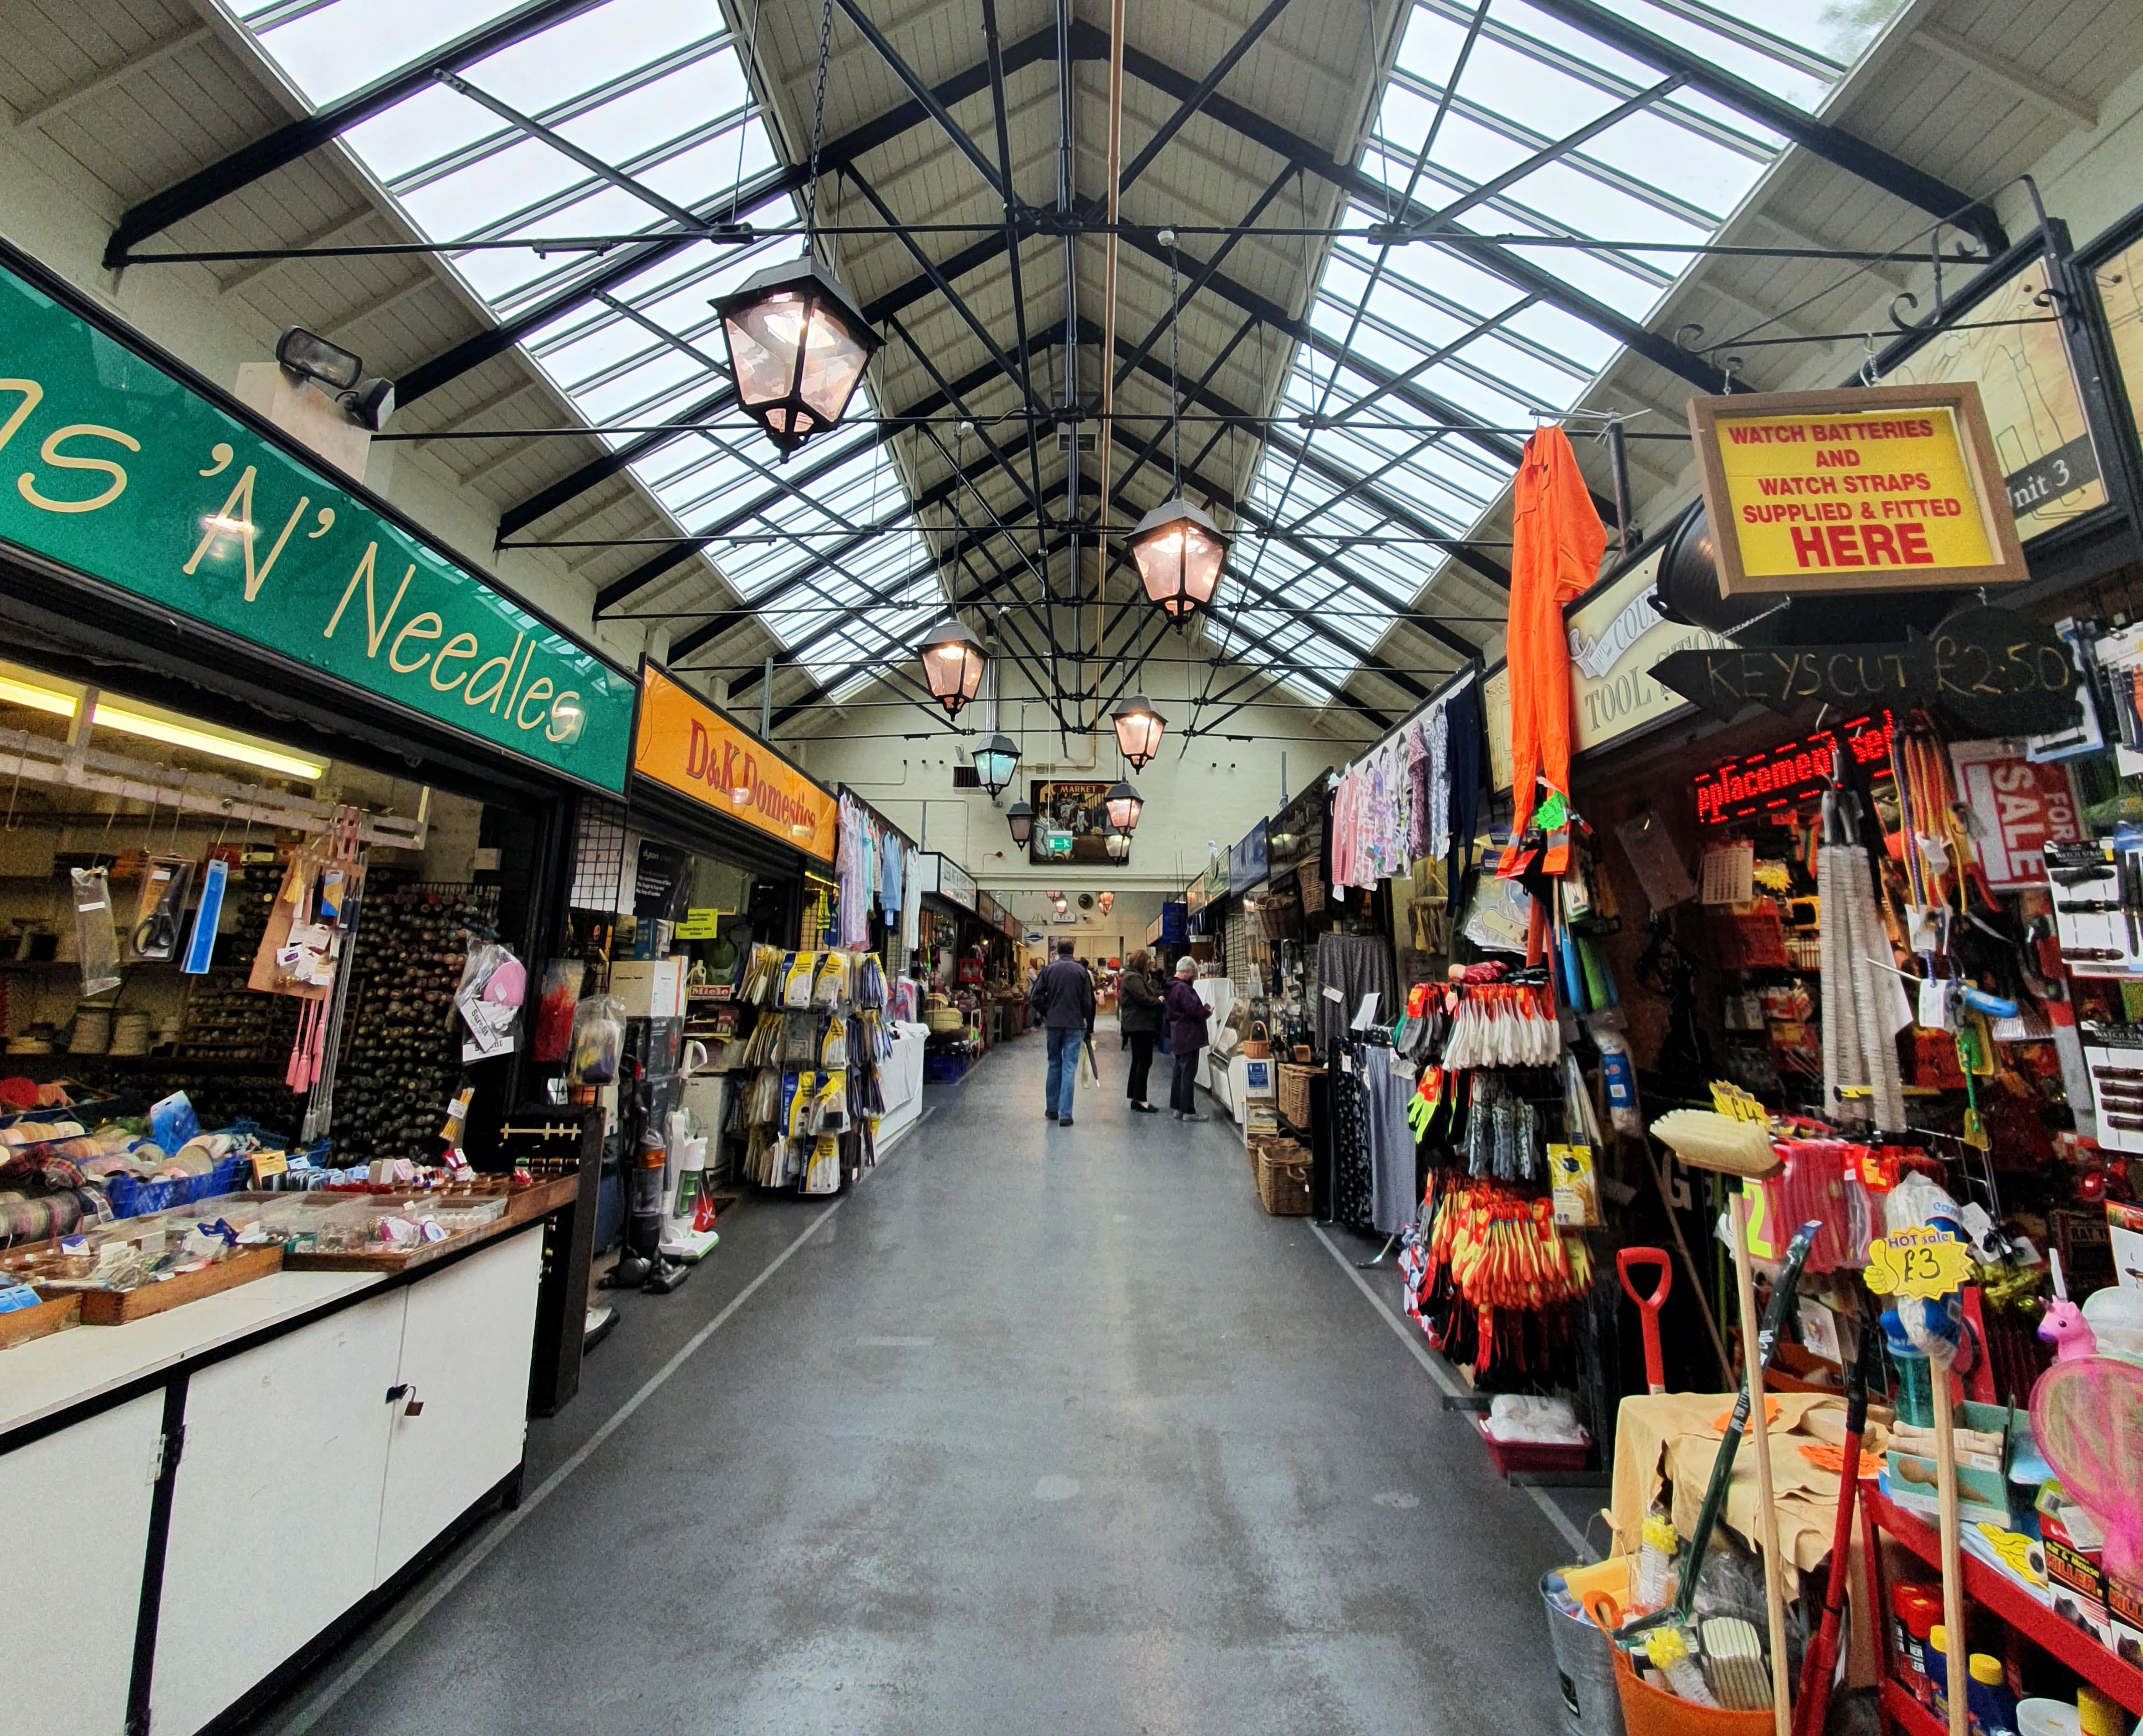 Market stalls inside Butter Market, Leek, Stoke-on-Trent